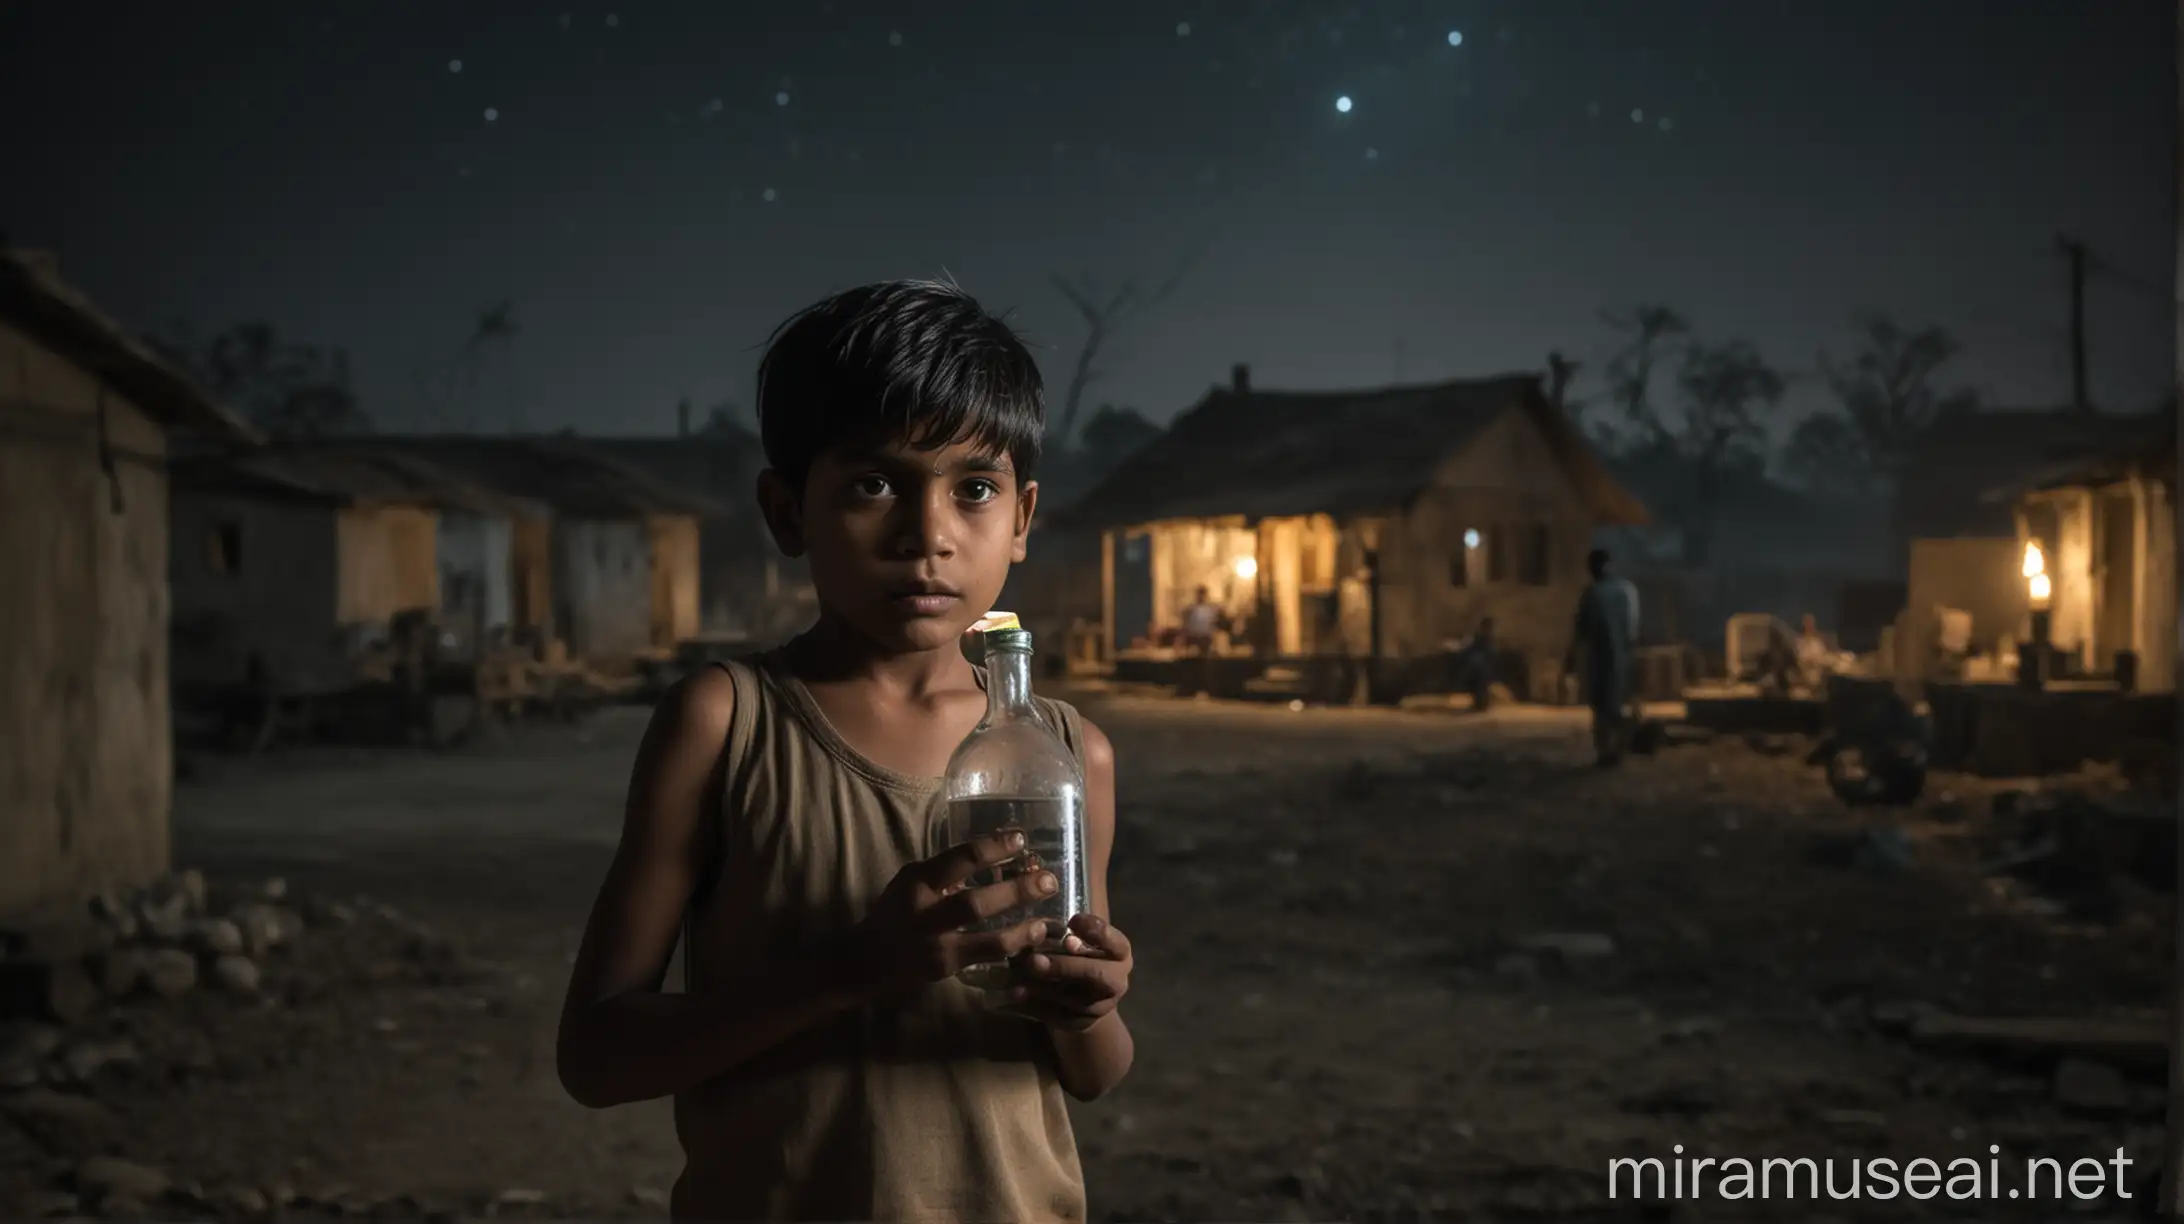 Indian Boy Holding Acid Bottle in Dark Village Night